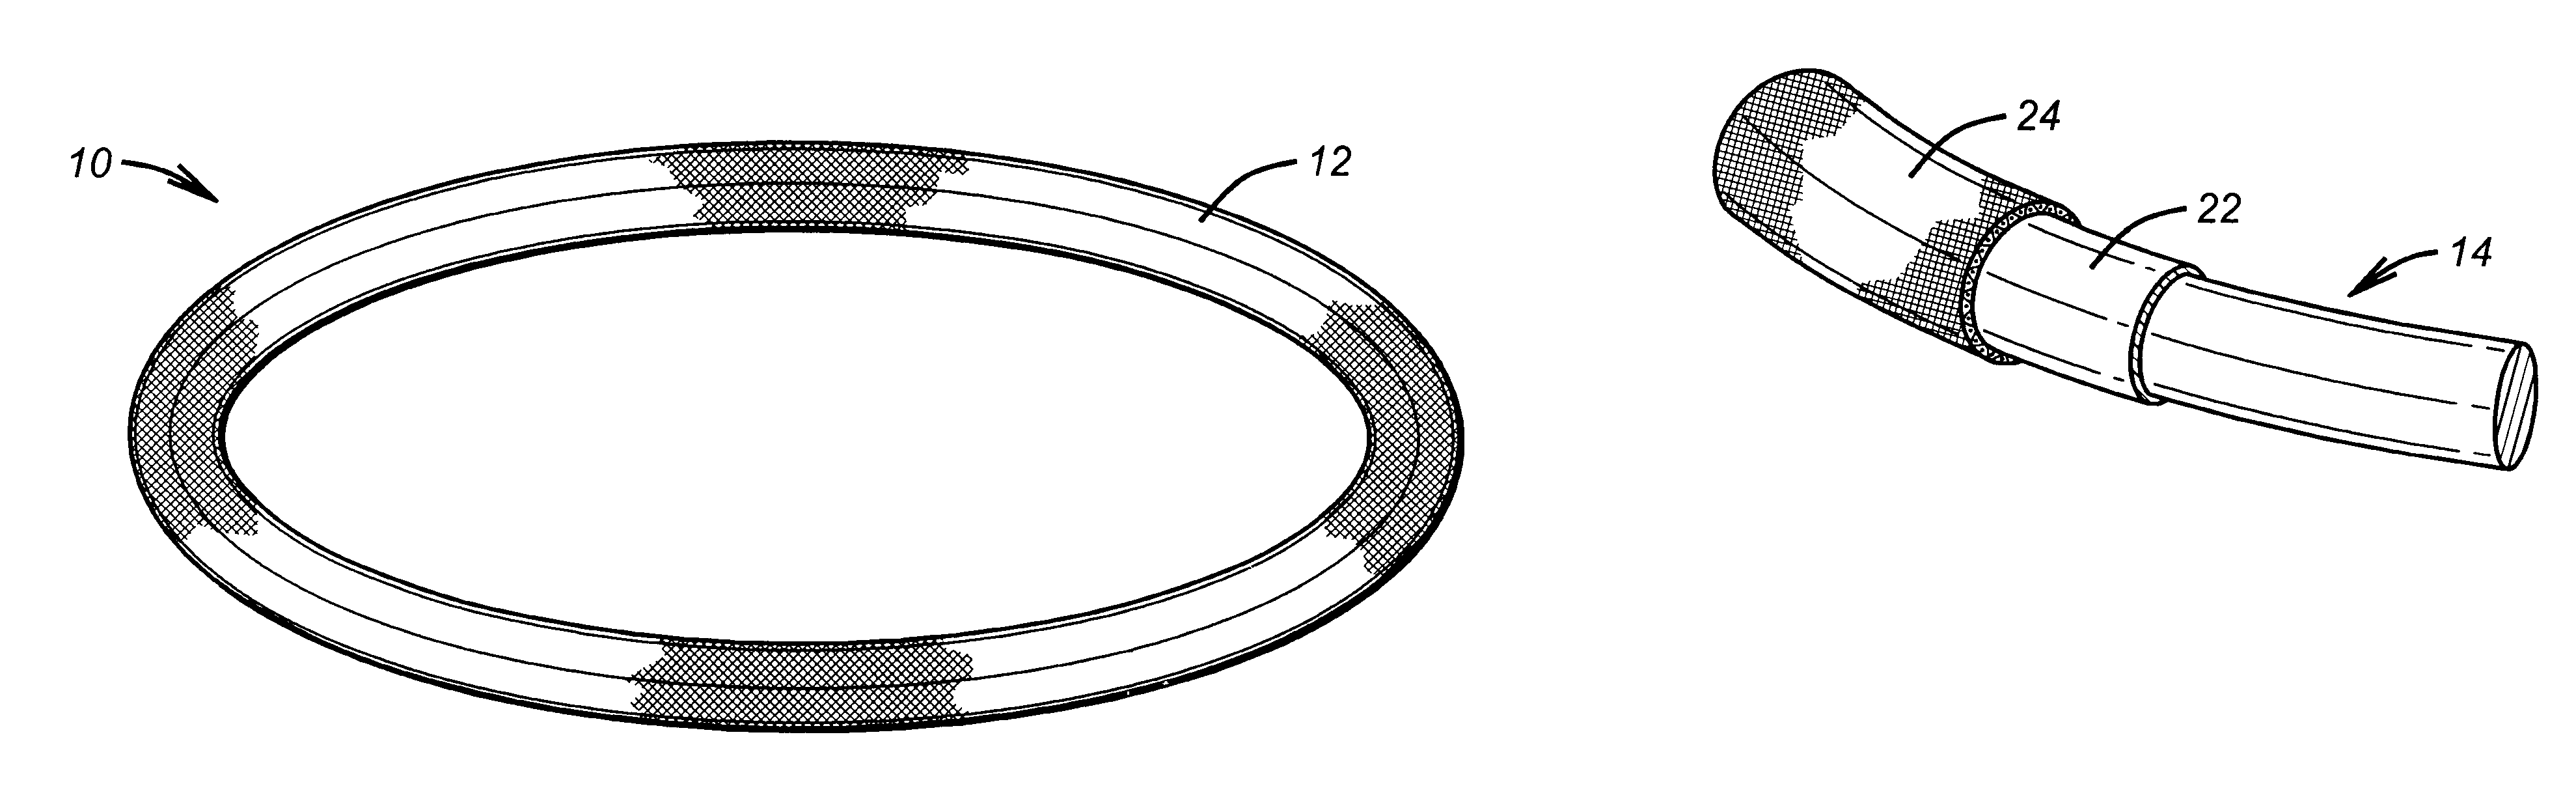 Antithrombogenic annuloplasty ring having a biodegradable insert